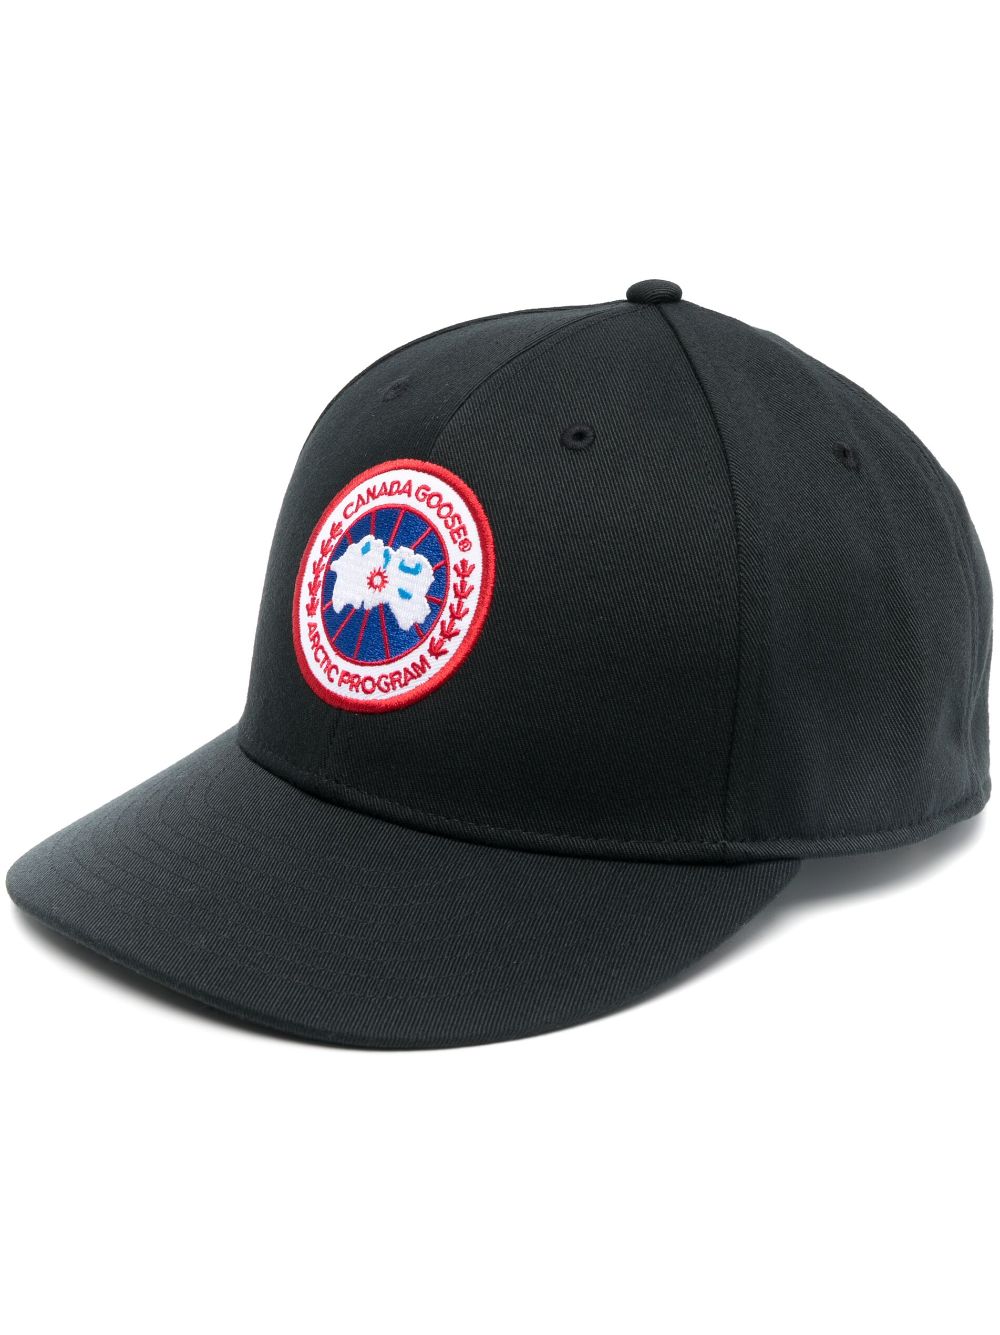 Canada Goose Arctic Disc baseball cap - Black von Canada Goose